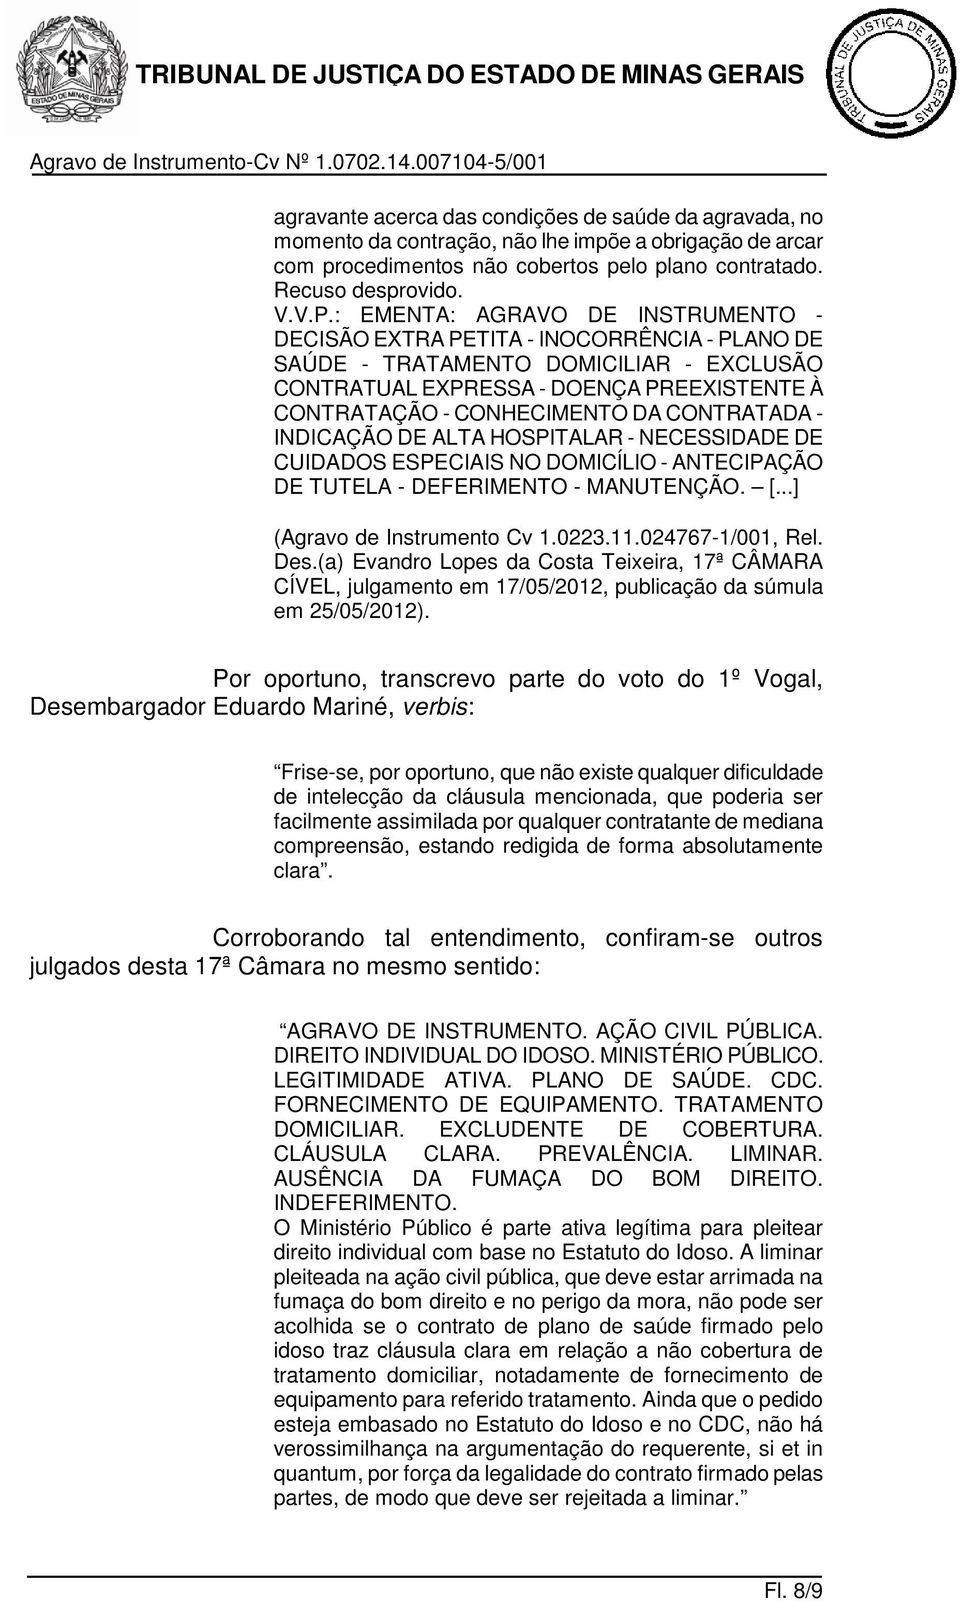 CONTRATADA - INDICAÇÃO DE ALTA HOSPITALAR - NECESSIDADE DE CUIDADOS ESPECIAIS NO DOMICÍLIO - ANTECIPAÇÃO DE TUTELA - DEFERIMENTO - MANUTENÇÃO. [...] (Agravo de Instrumento Cv 1.0223.11.